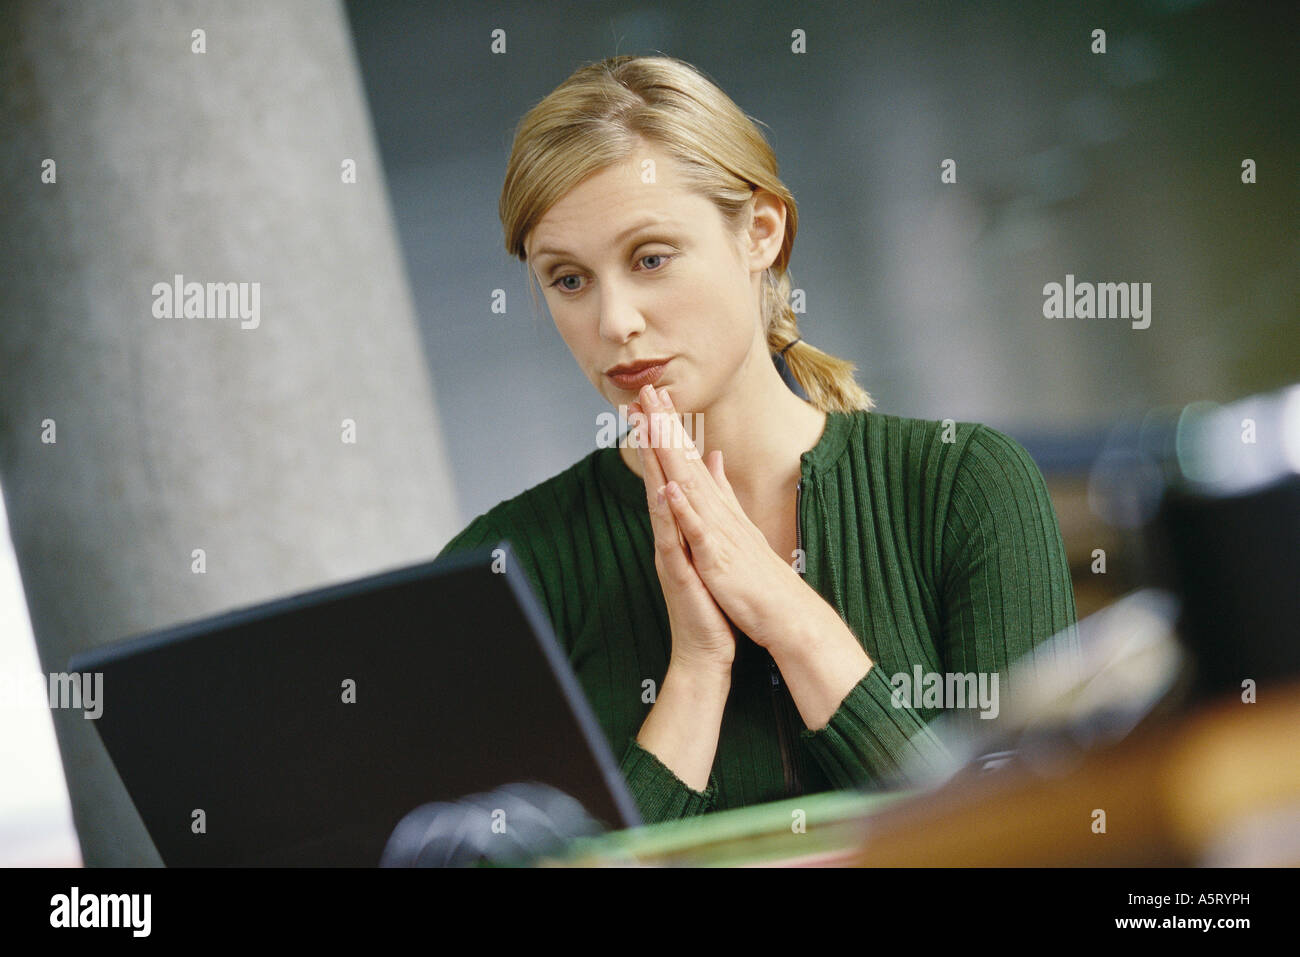 Mujer joven con laptop, las manos entrelazadas delante de barbilla Foto de stock